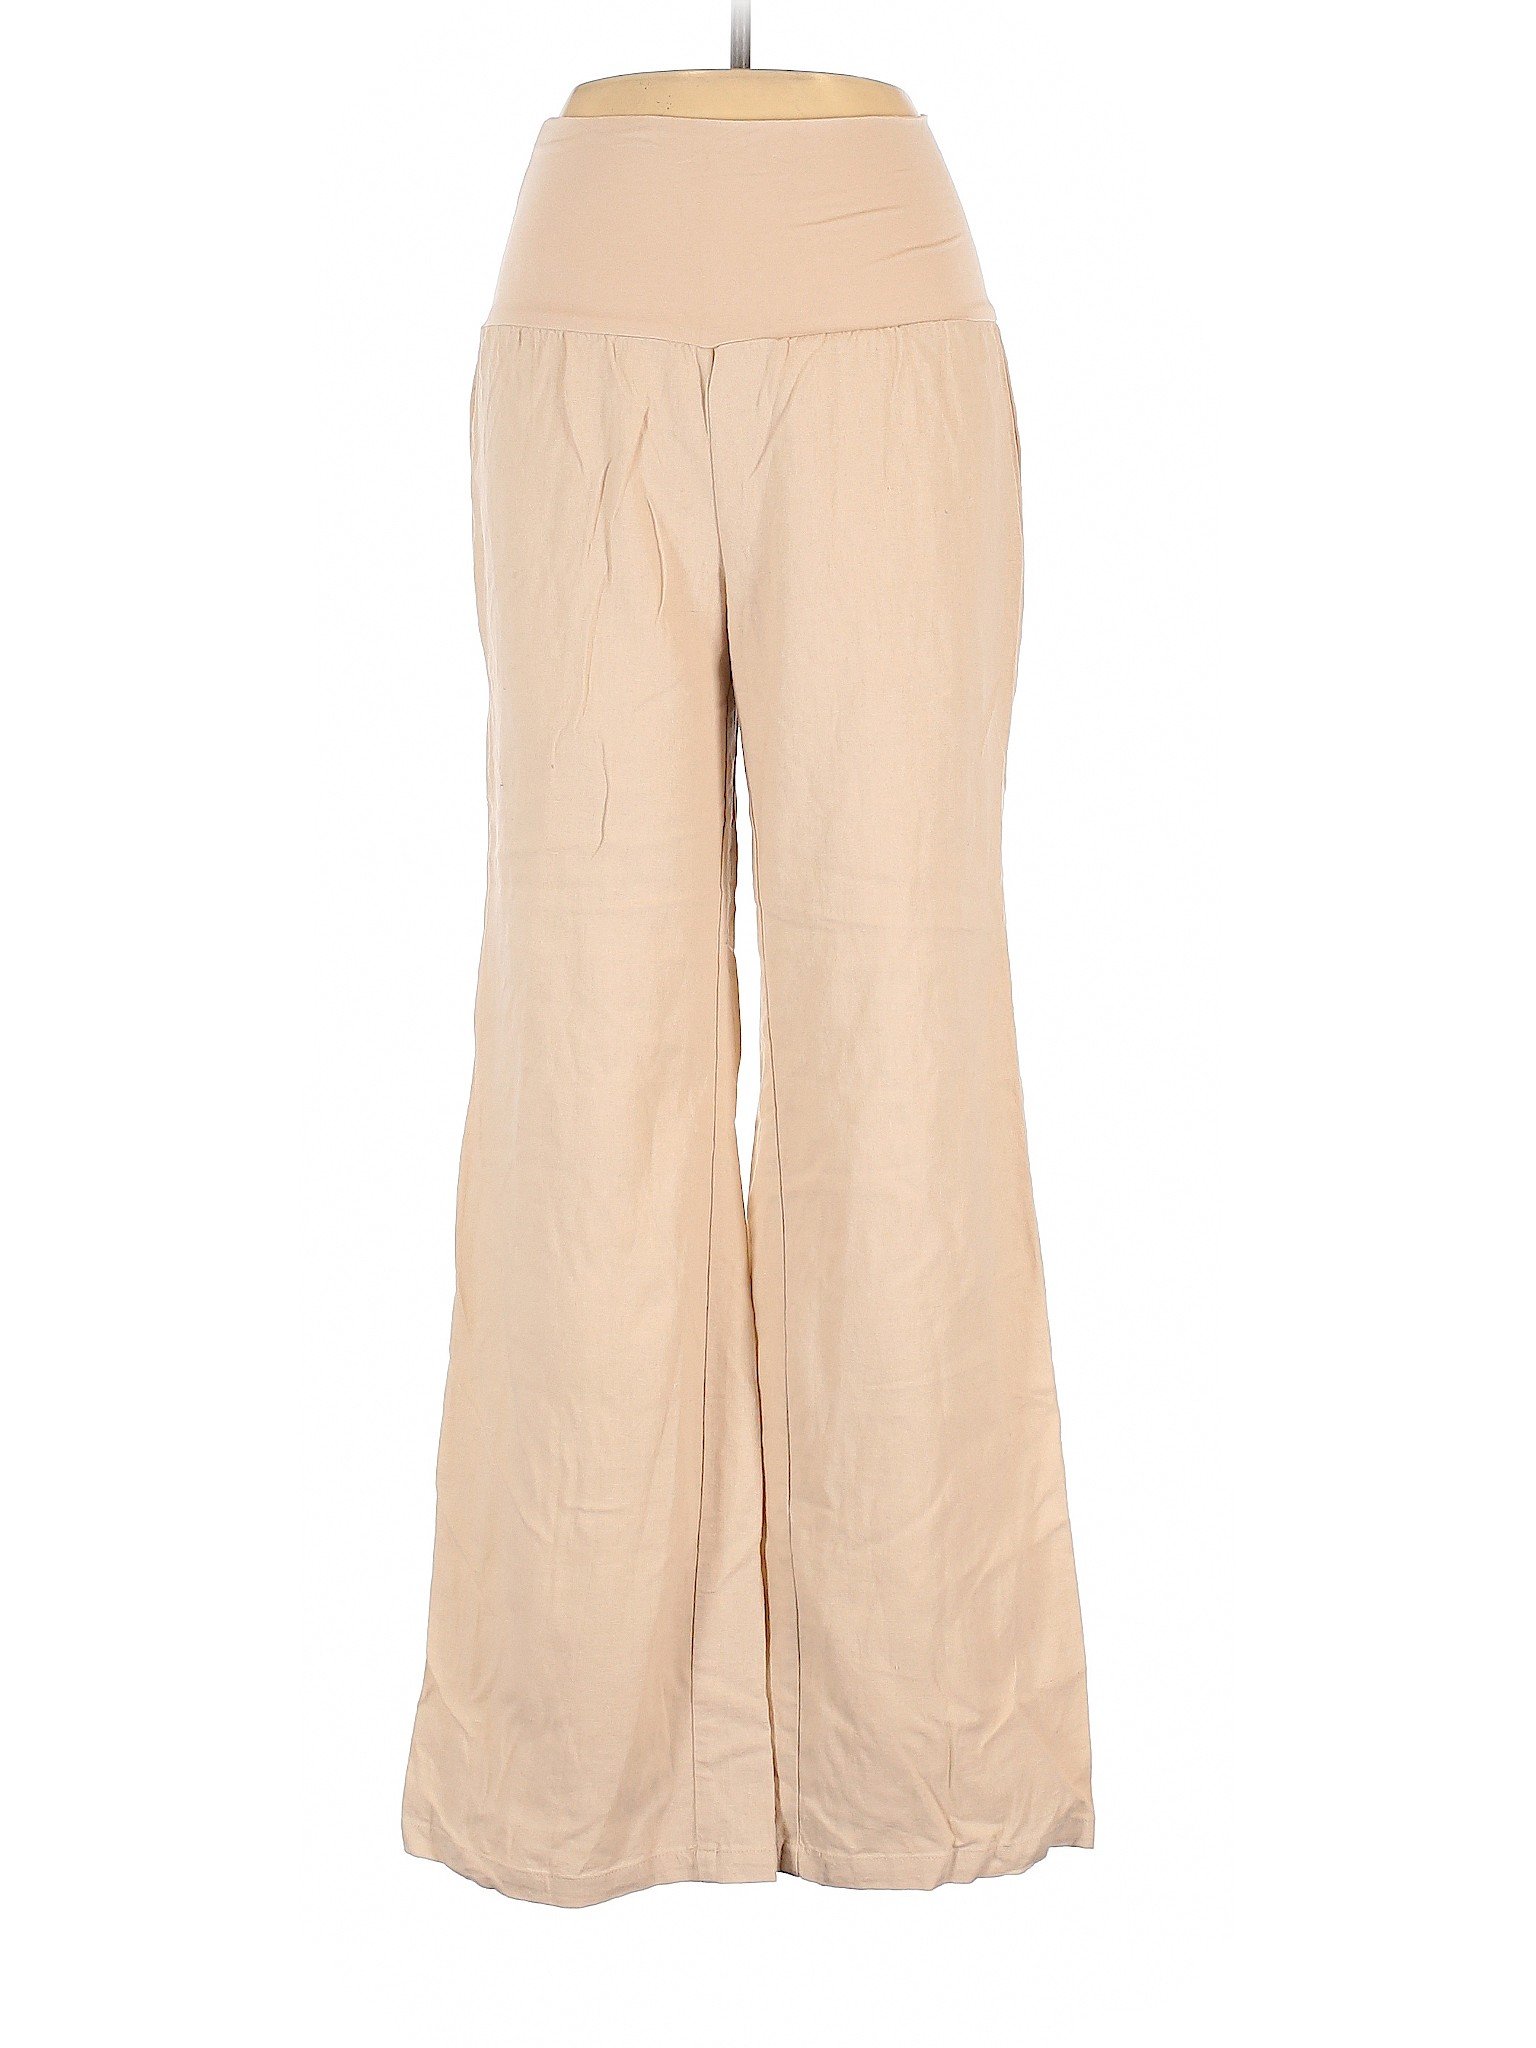 Bajee by Be Cool Women Brown Linen Pants L | eBay